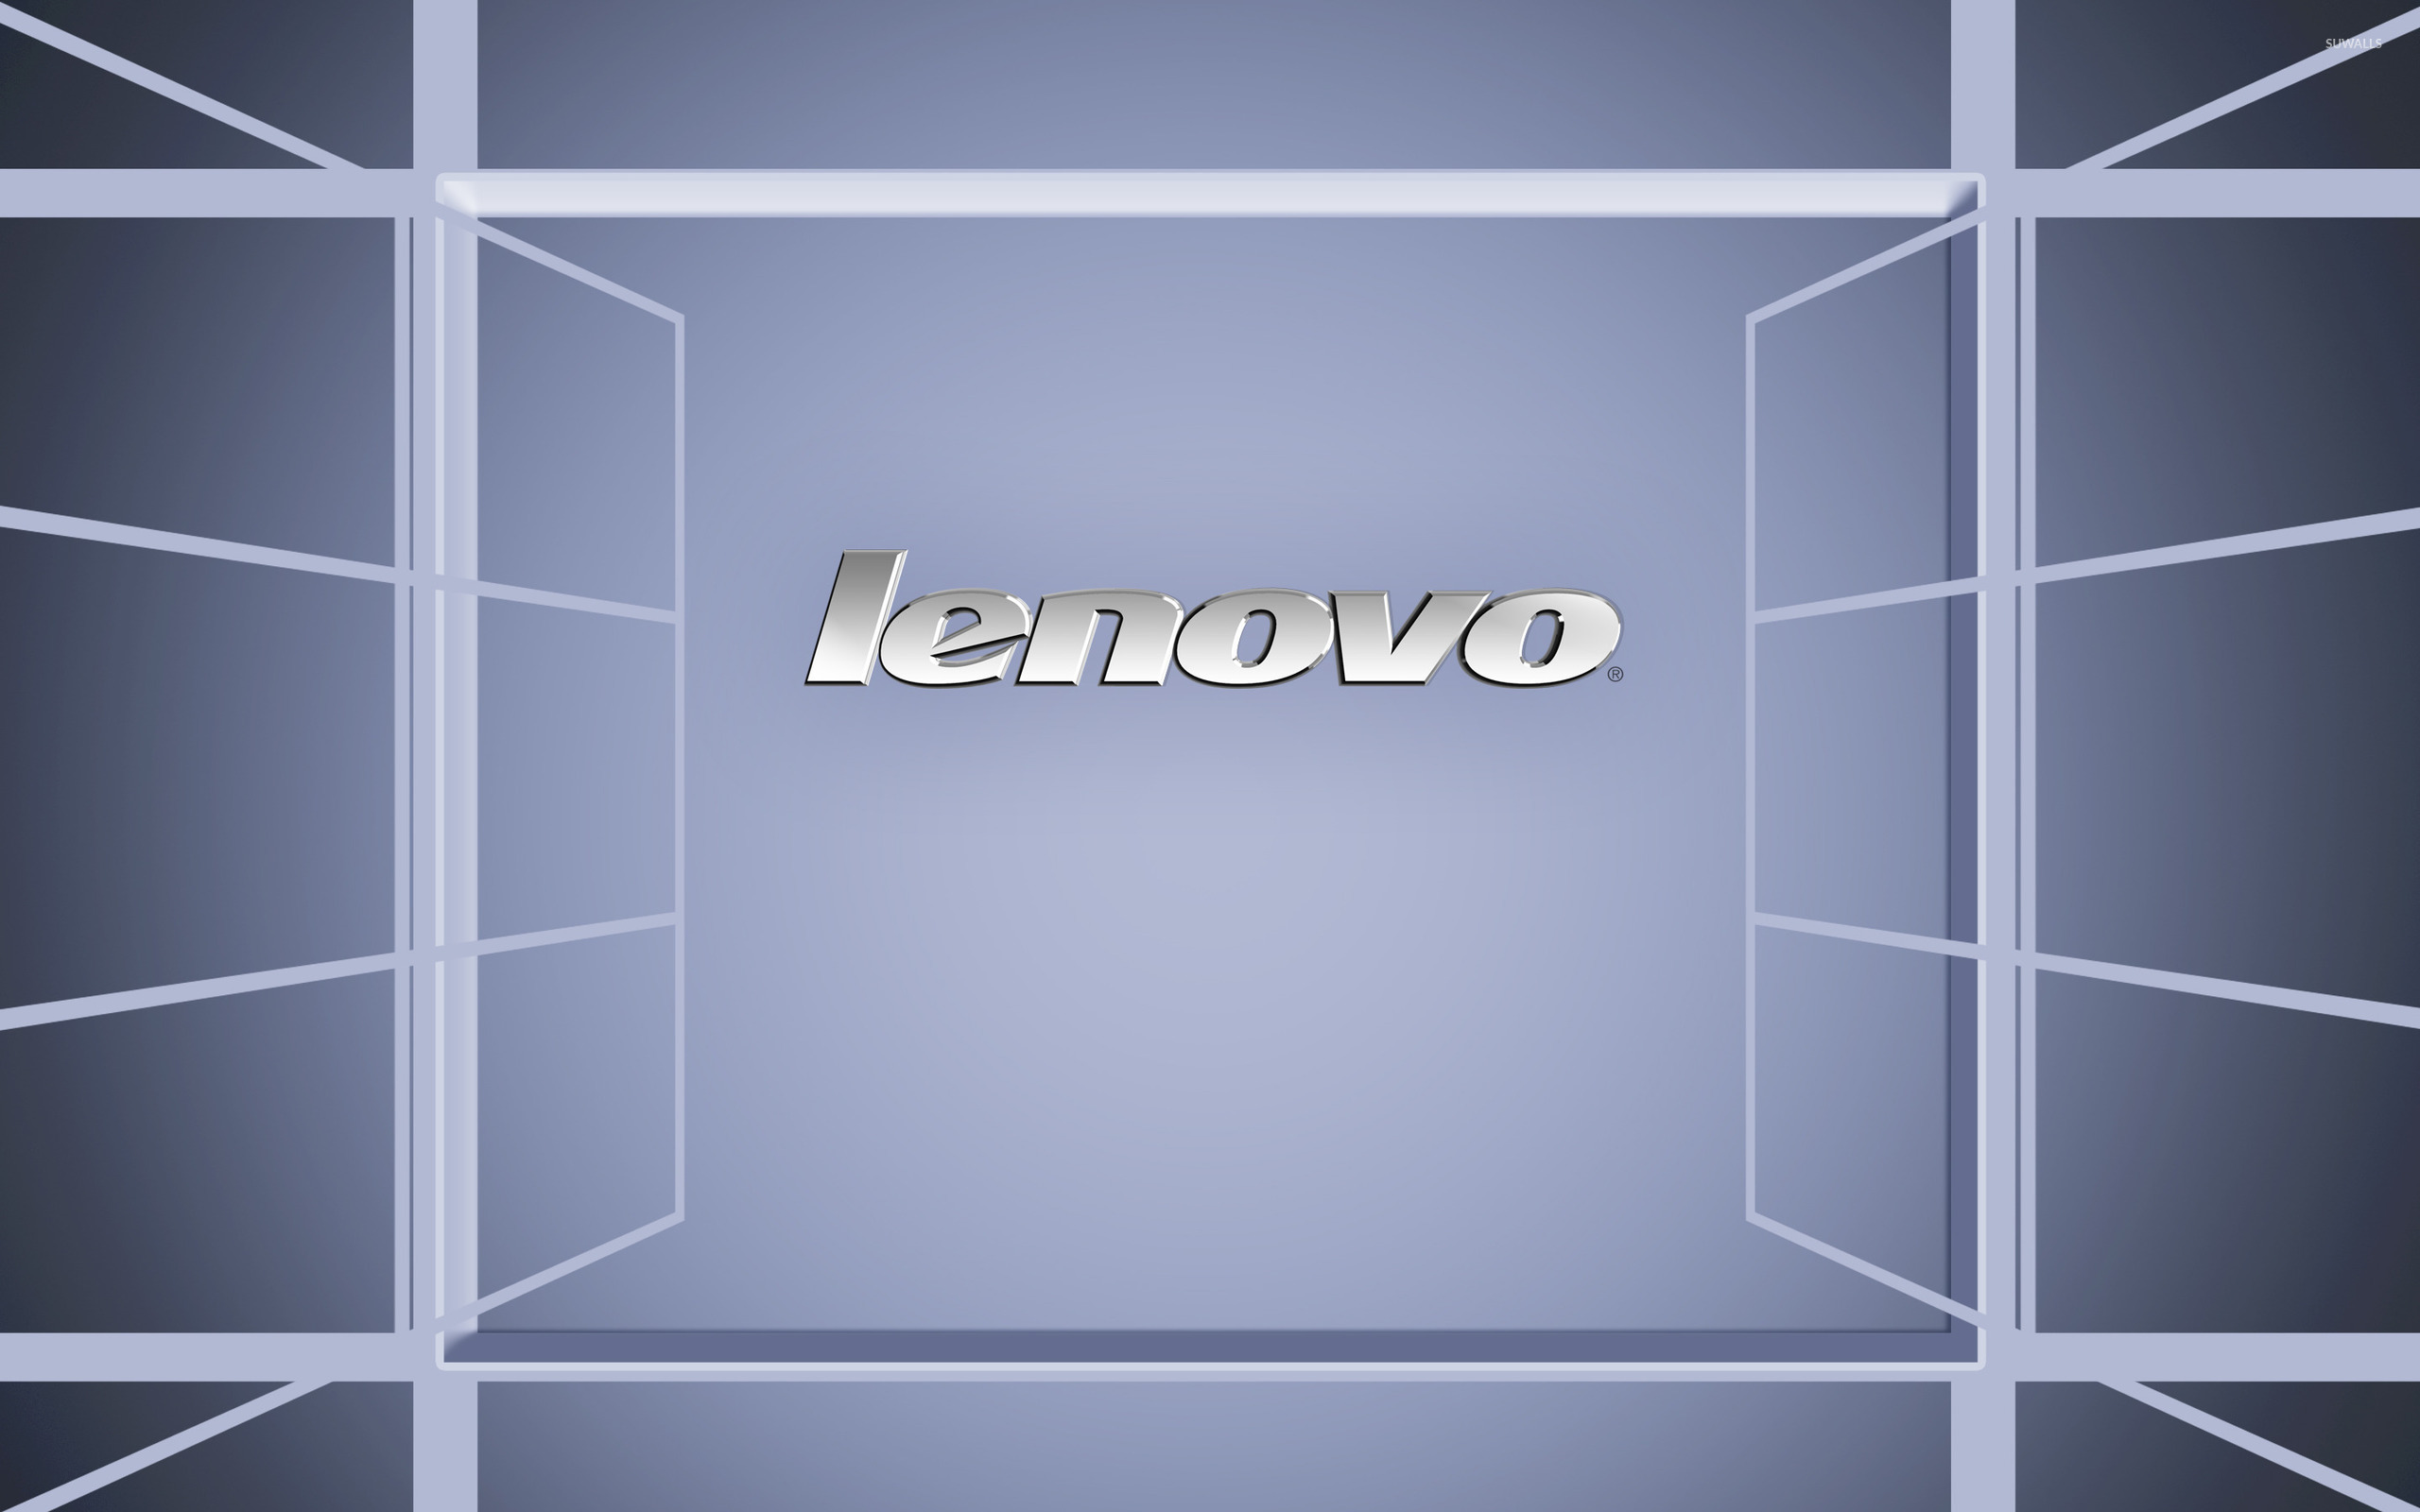 Lenovo Wallpaper Puter